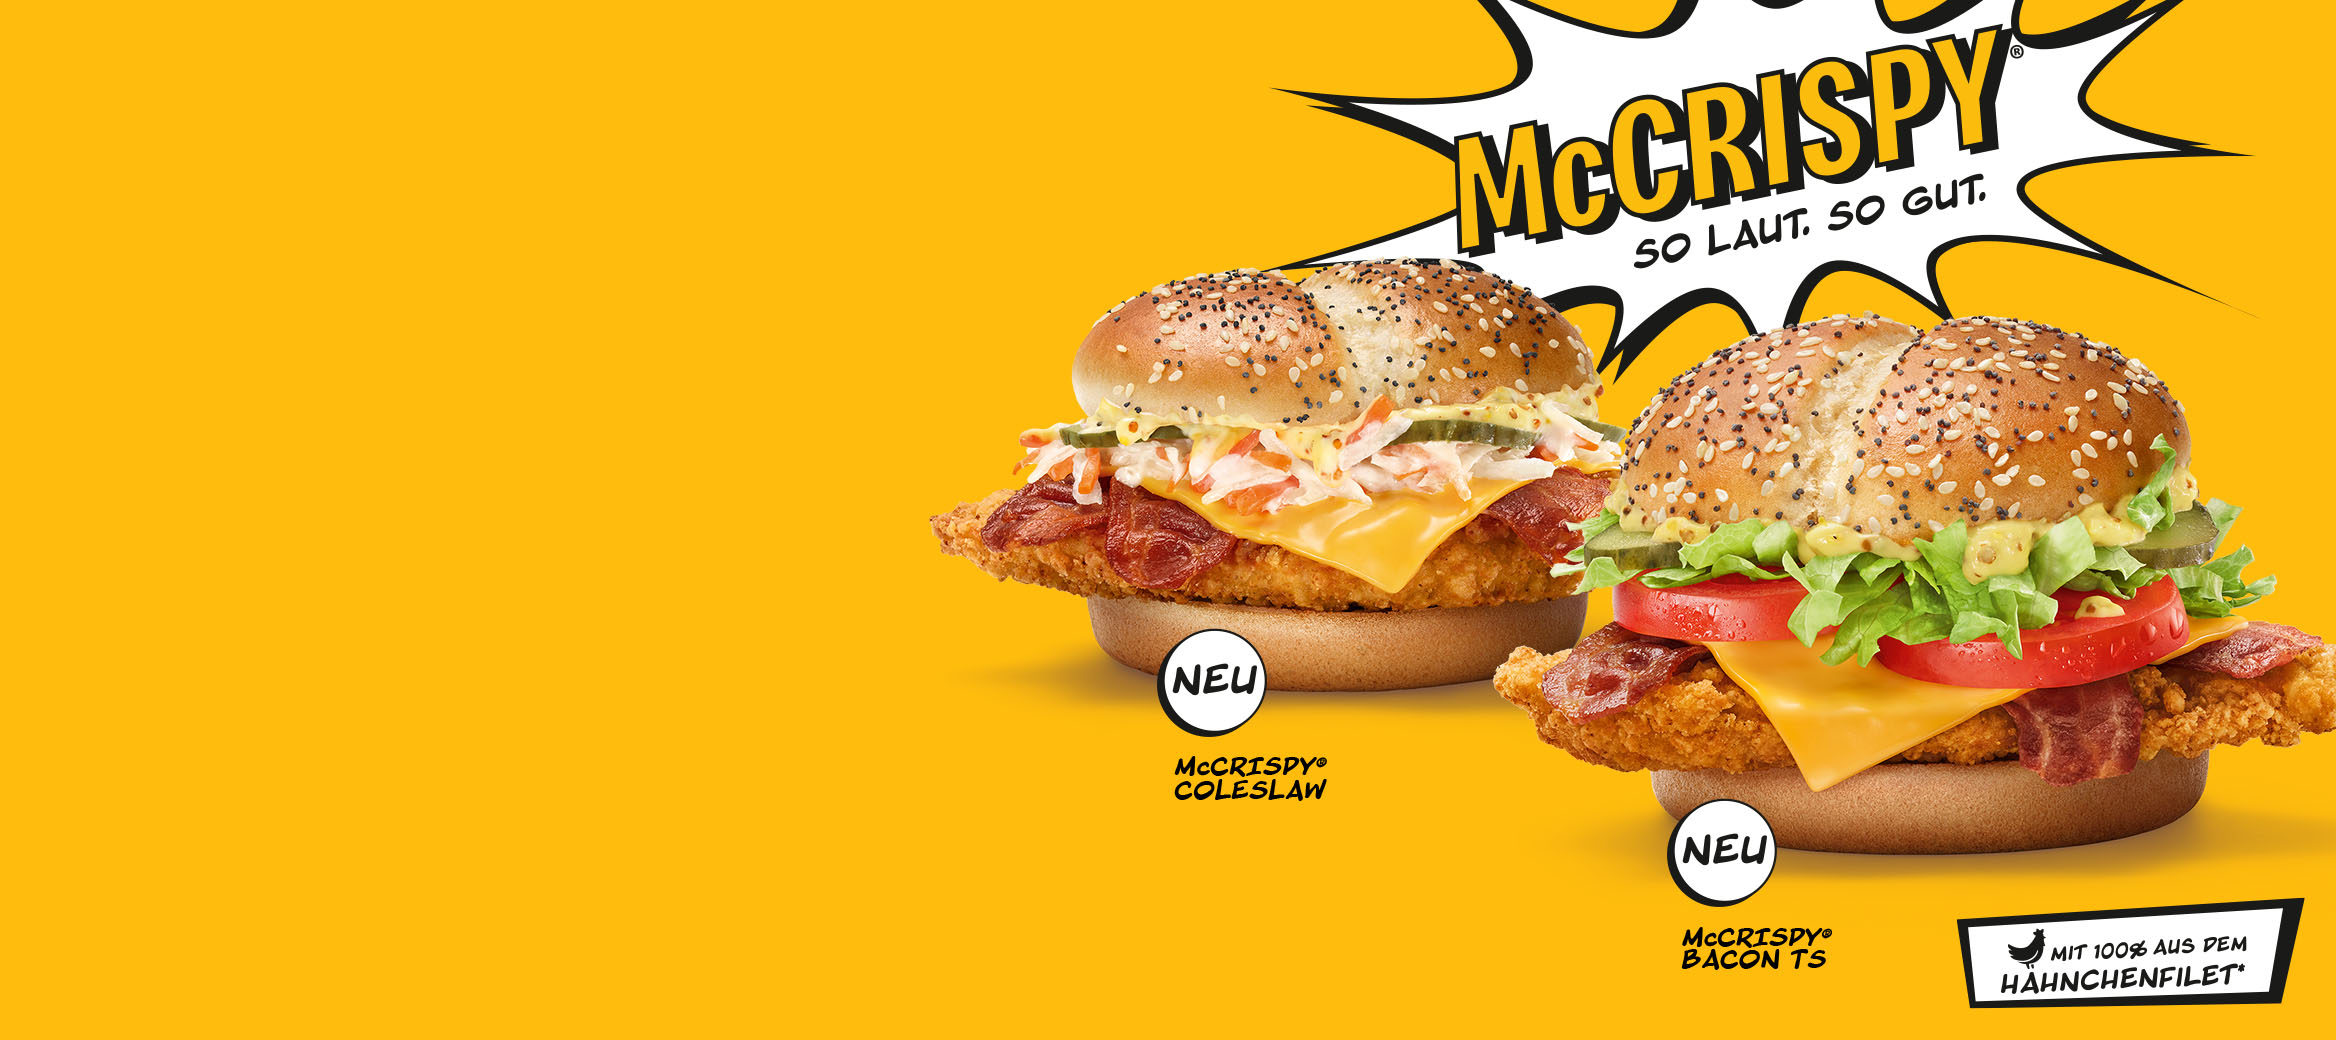 Der neue McCrispy® Coleslaw und McCrispy® Bacon TS sind abgebildet. Darüber steht: McCrispy®: So laut so gut. Darunter ein Hinweis: Mit 100% aus dem Hähnchenfilet*